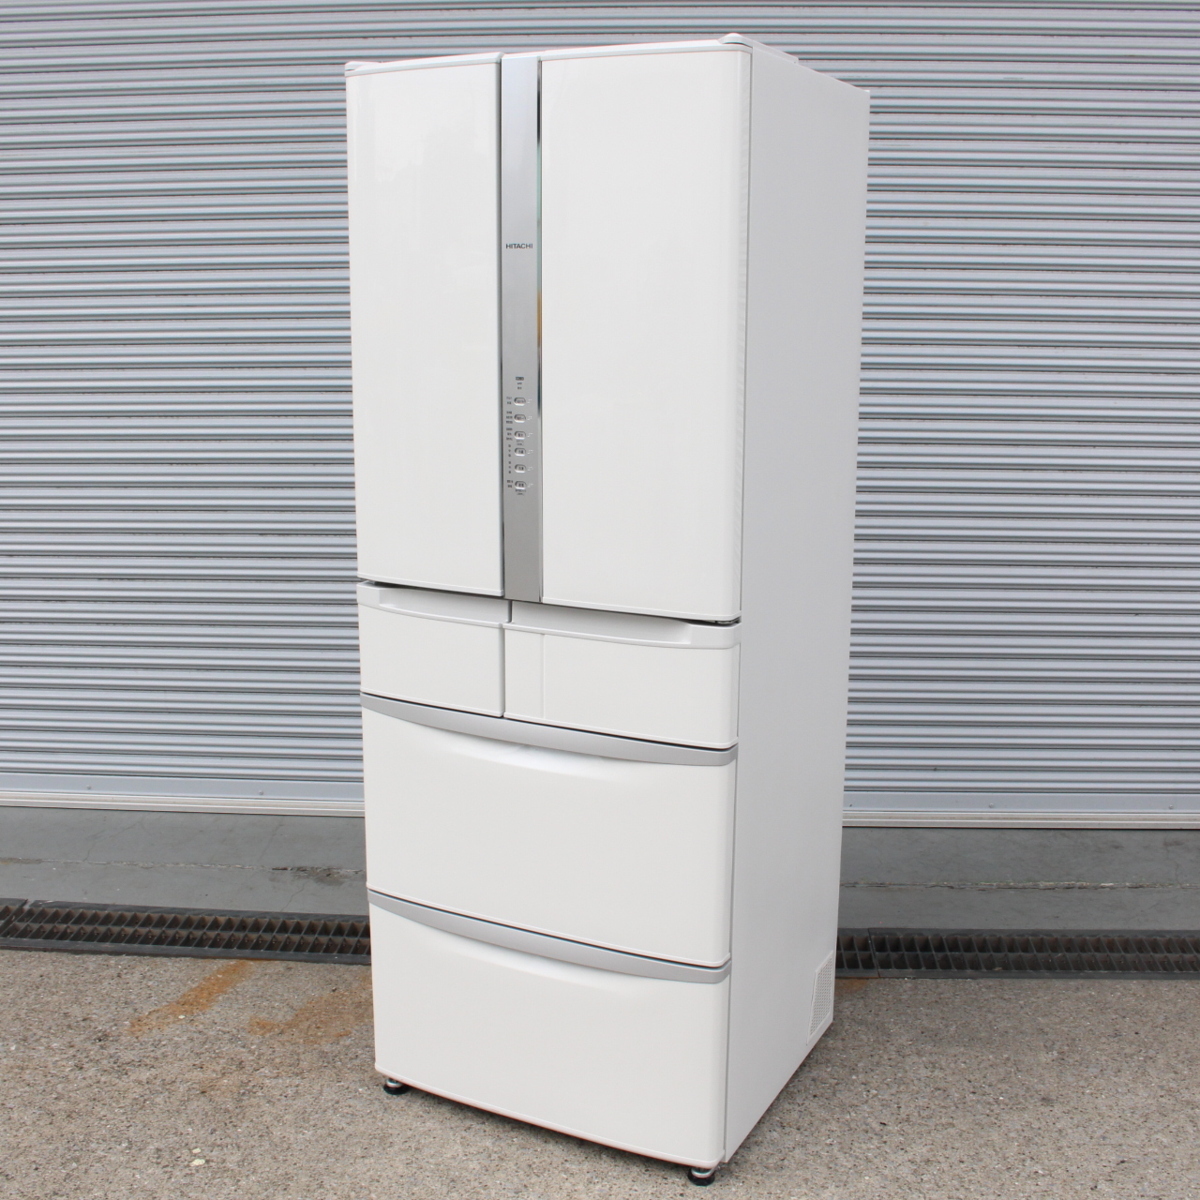 横浜市緑区にて 日立 冷蔵庫 R-F48M2 2018年製 を出張買取させて頂きました。